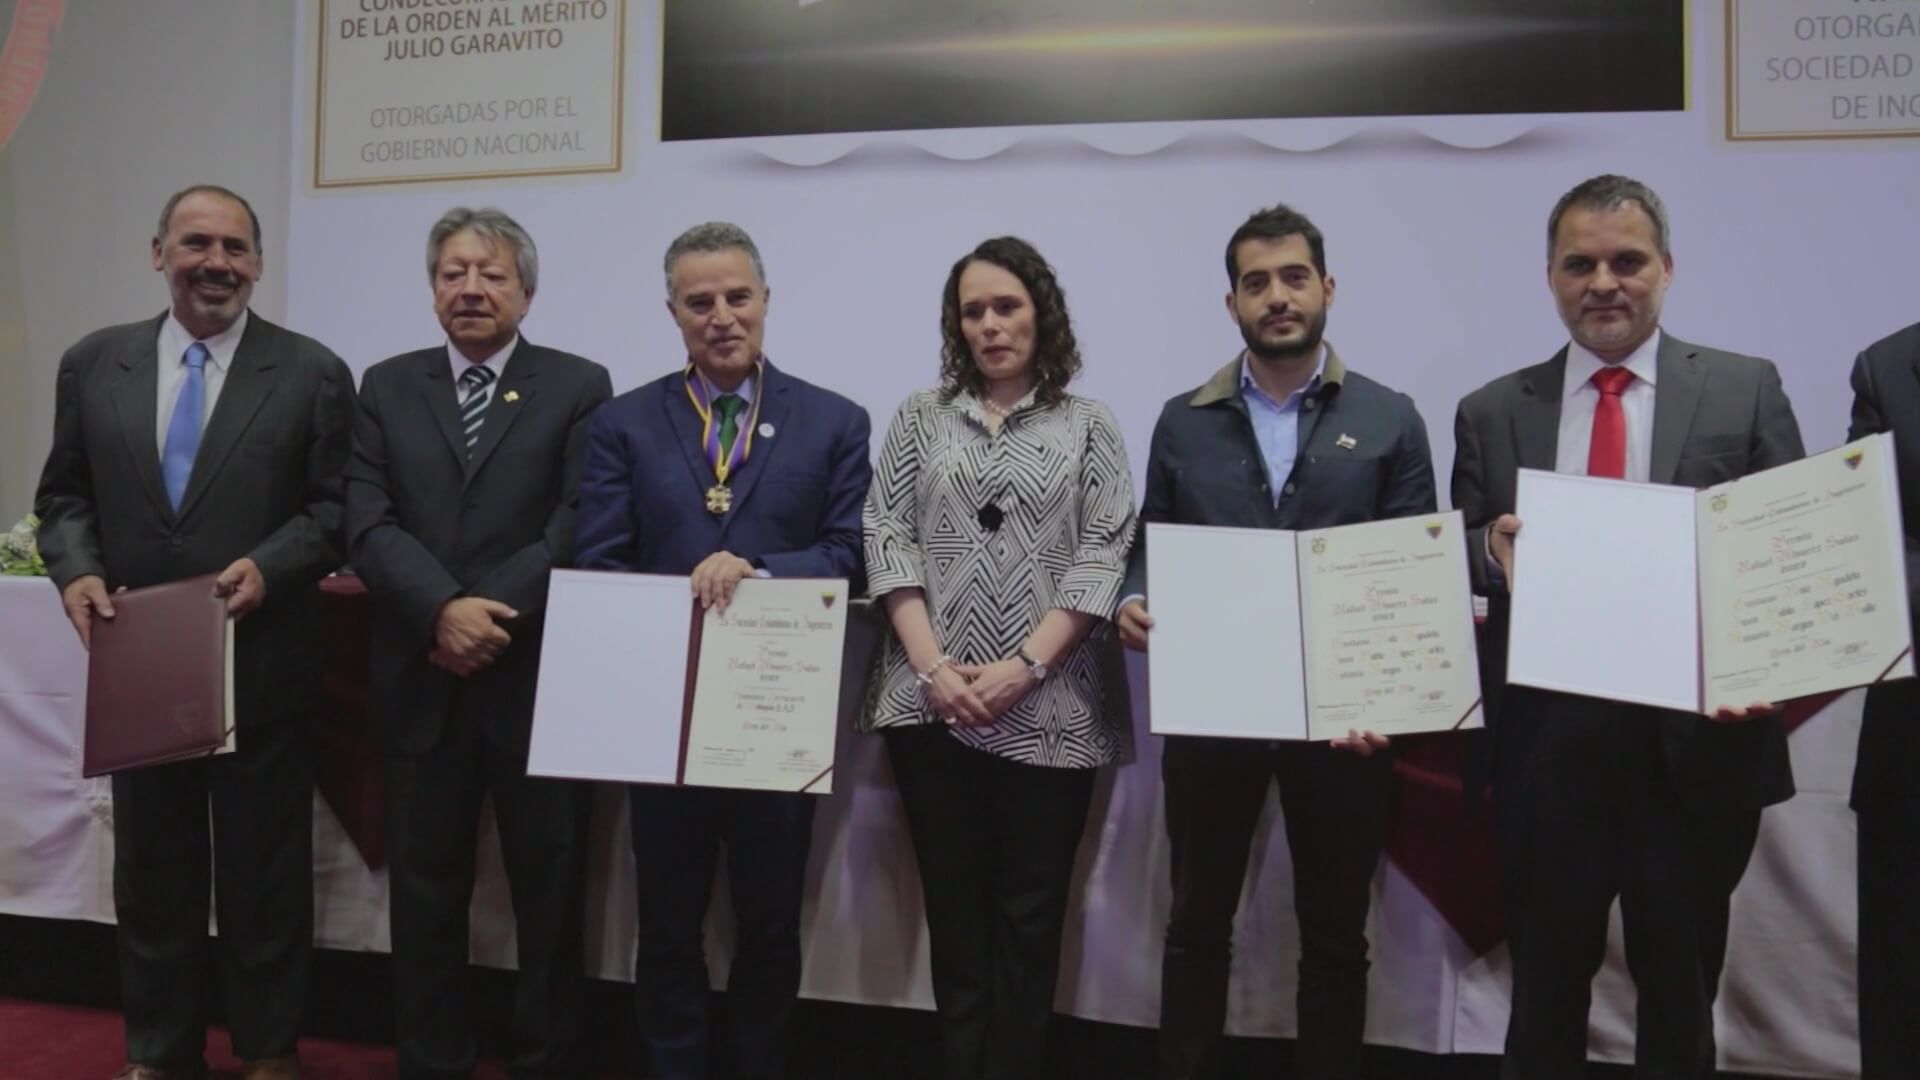 Gobernador recibe premio por proyecto Tren del Río